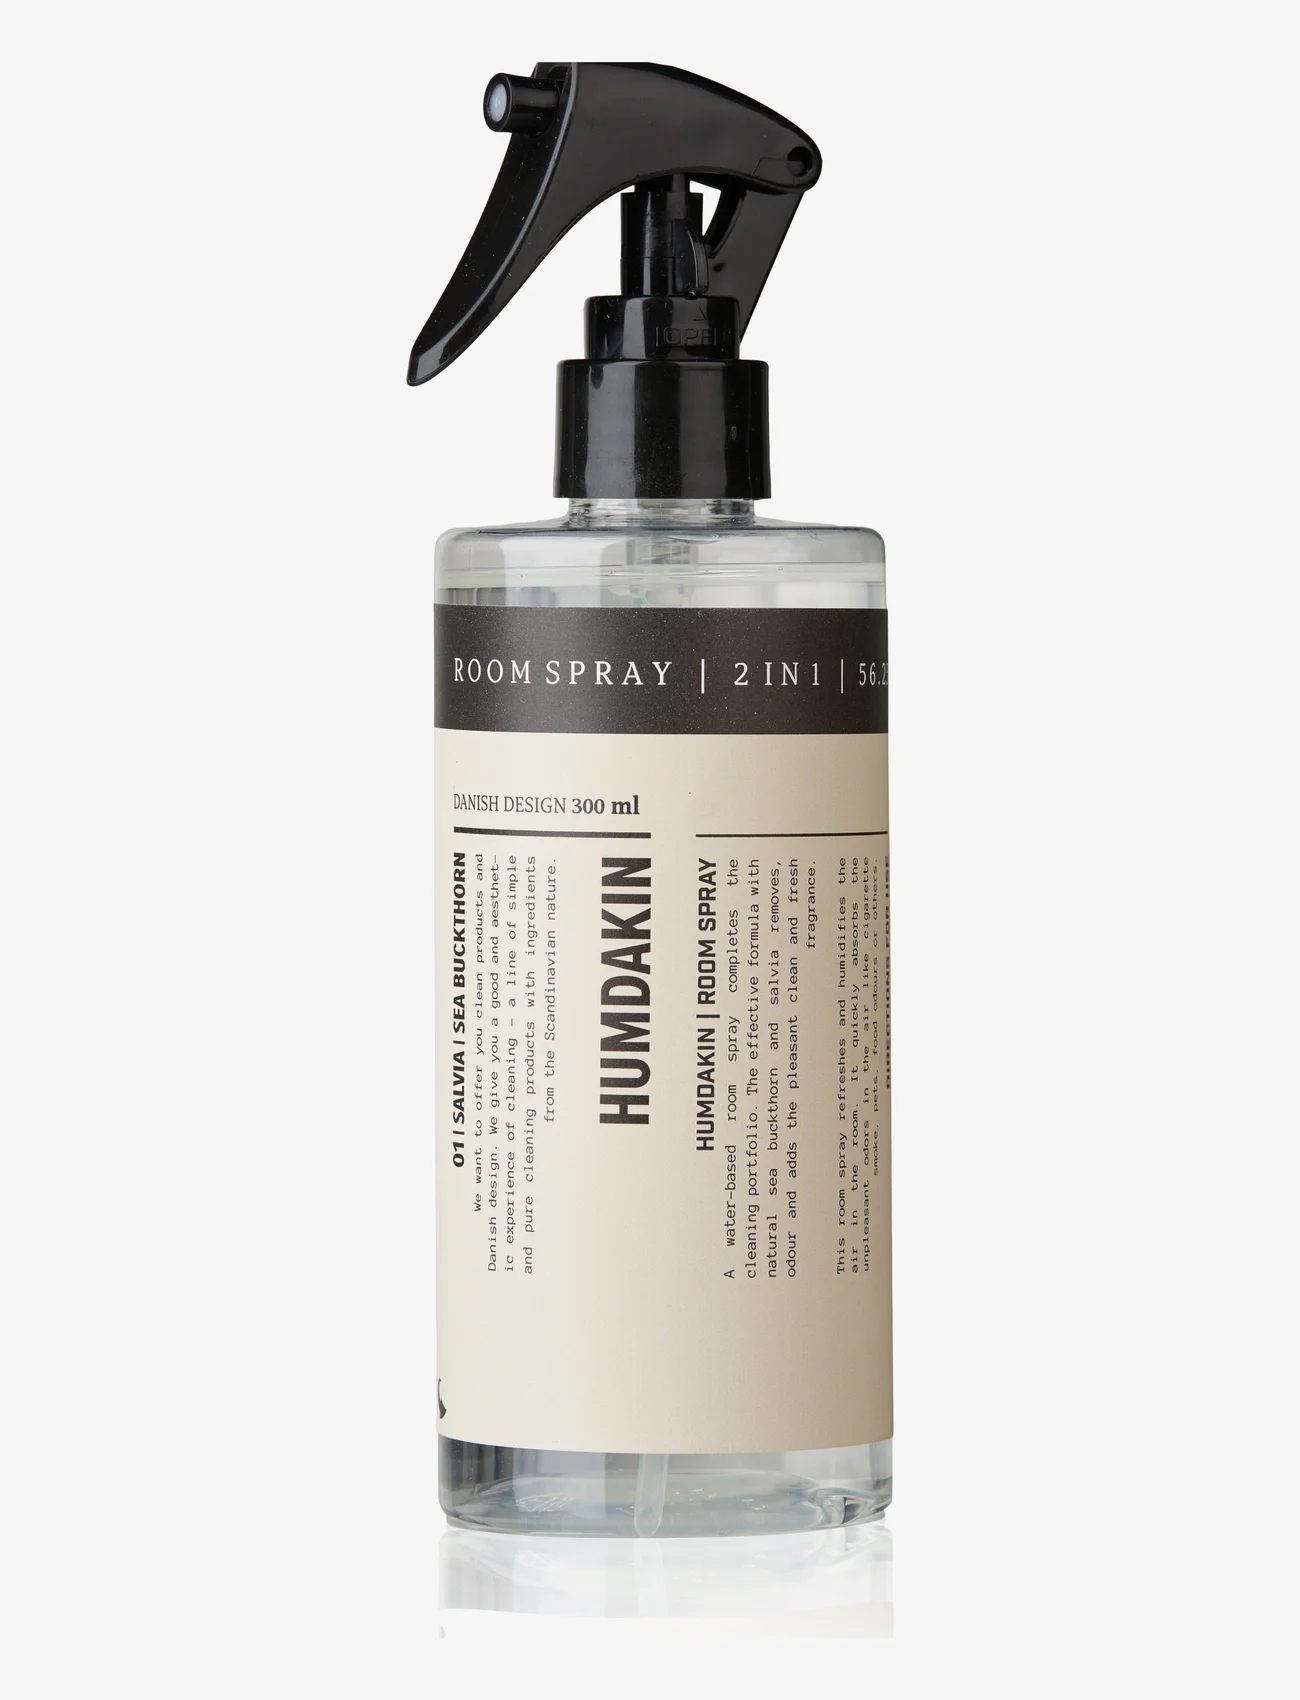 Humdakin - Room spray - 2-in-1 - laveste priser - netural - 0